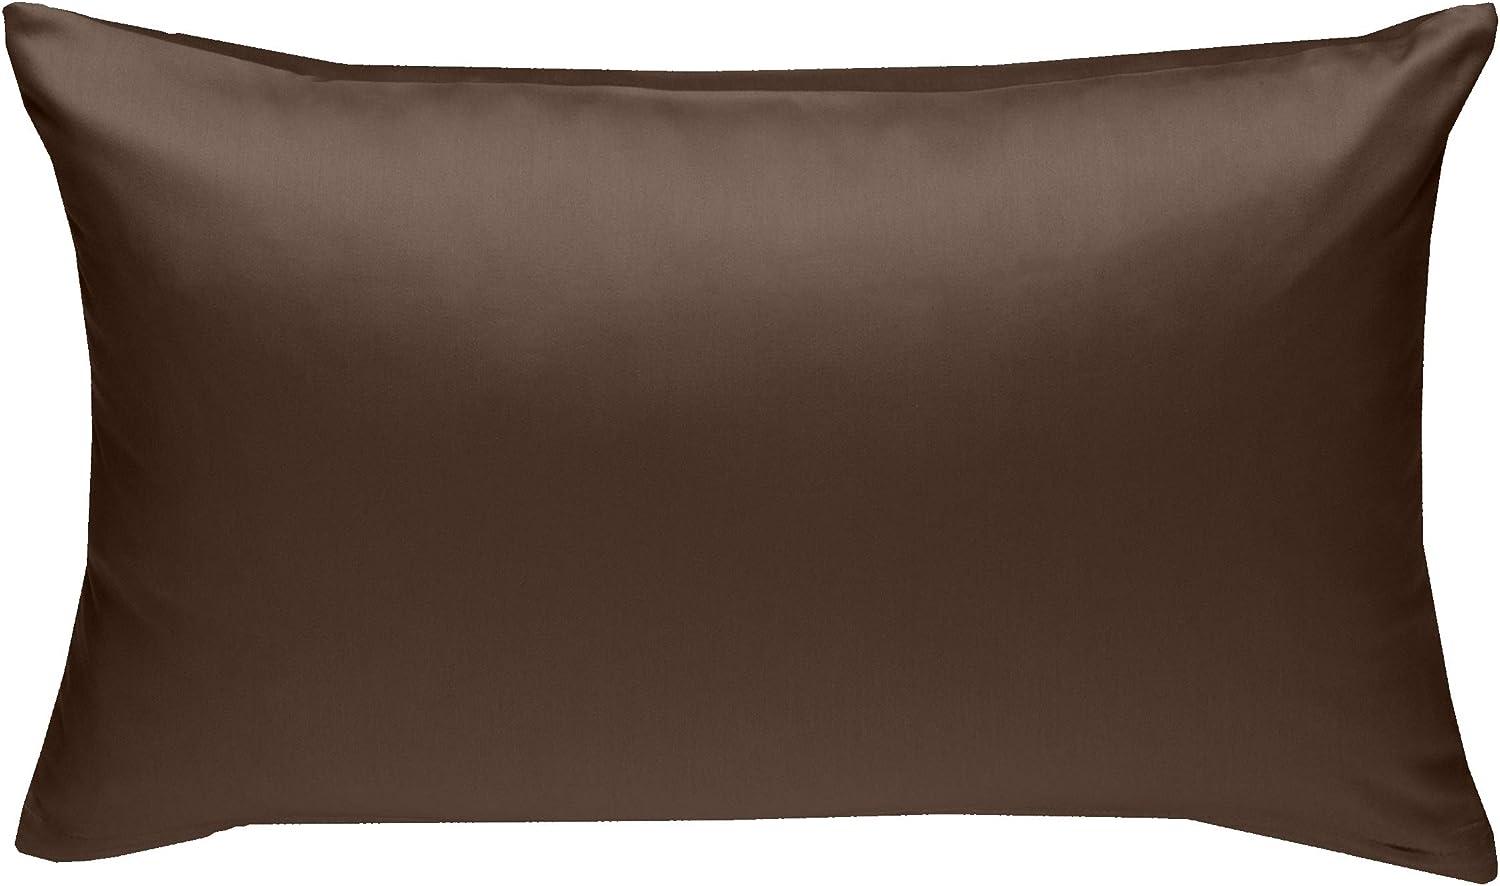 Bettwaesche-mit-Stil Mako-Satin / Baumwollsatin Bettwäsche uni / einfarbig dunkelbraun Kissenbezug 40x60 cm Bild 1